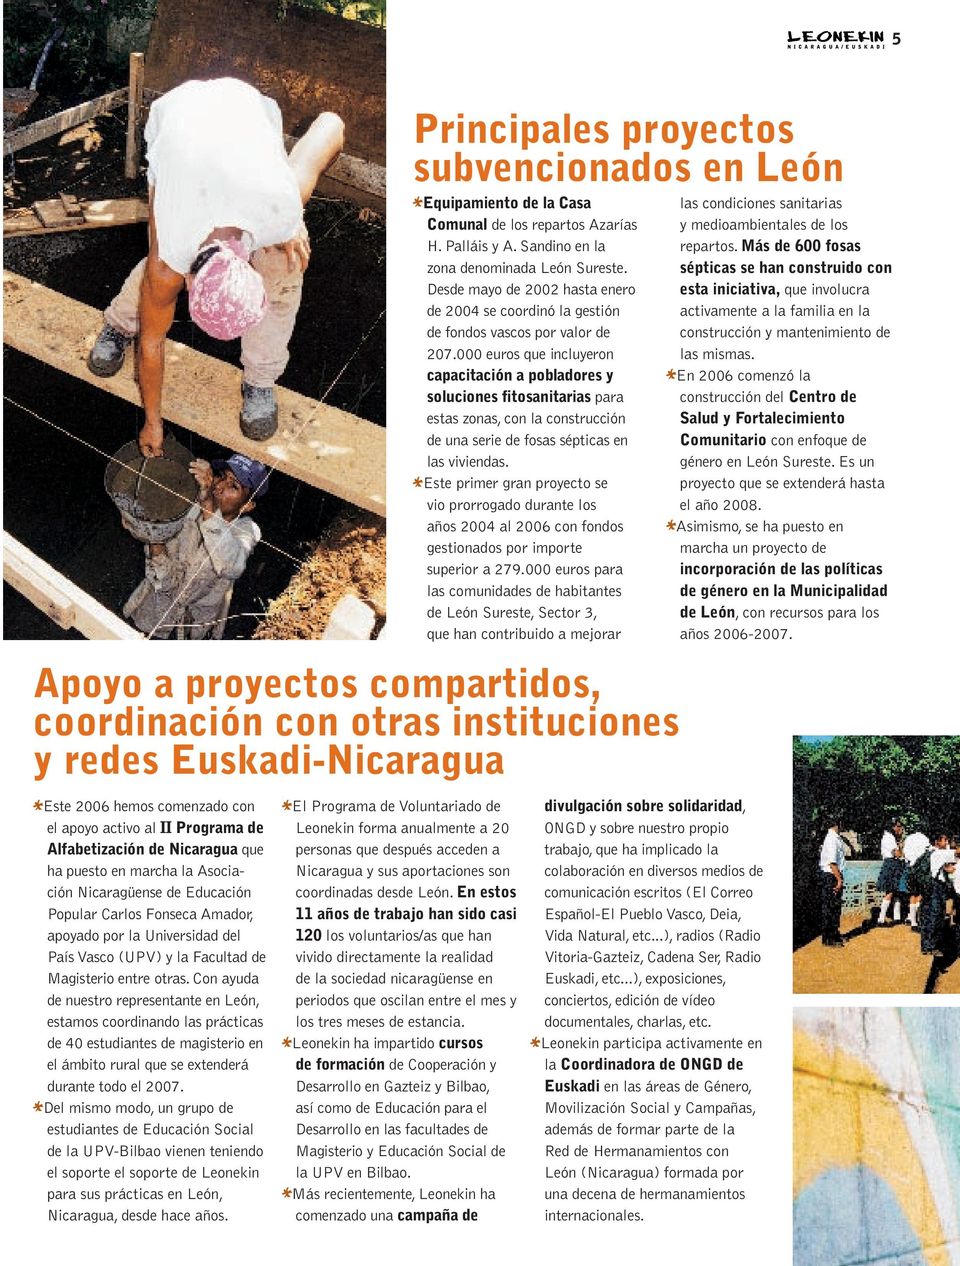 Con ayuda de nuestro representante en León, estamos coordinando las prácticas de 40 estudiantes de magisterio en el ámbito rural que se extenderá durante todo el 2007.